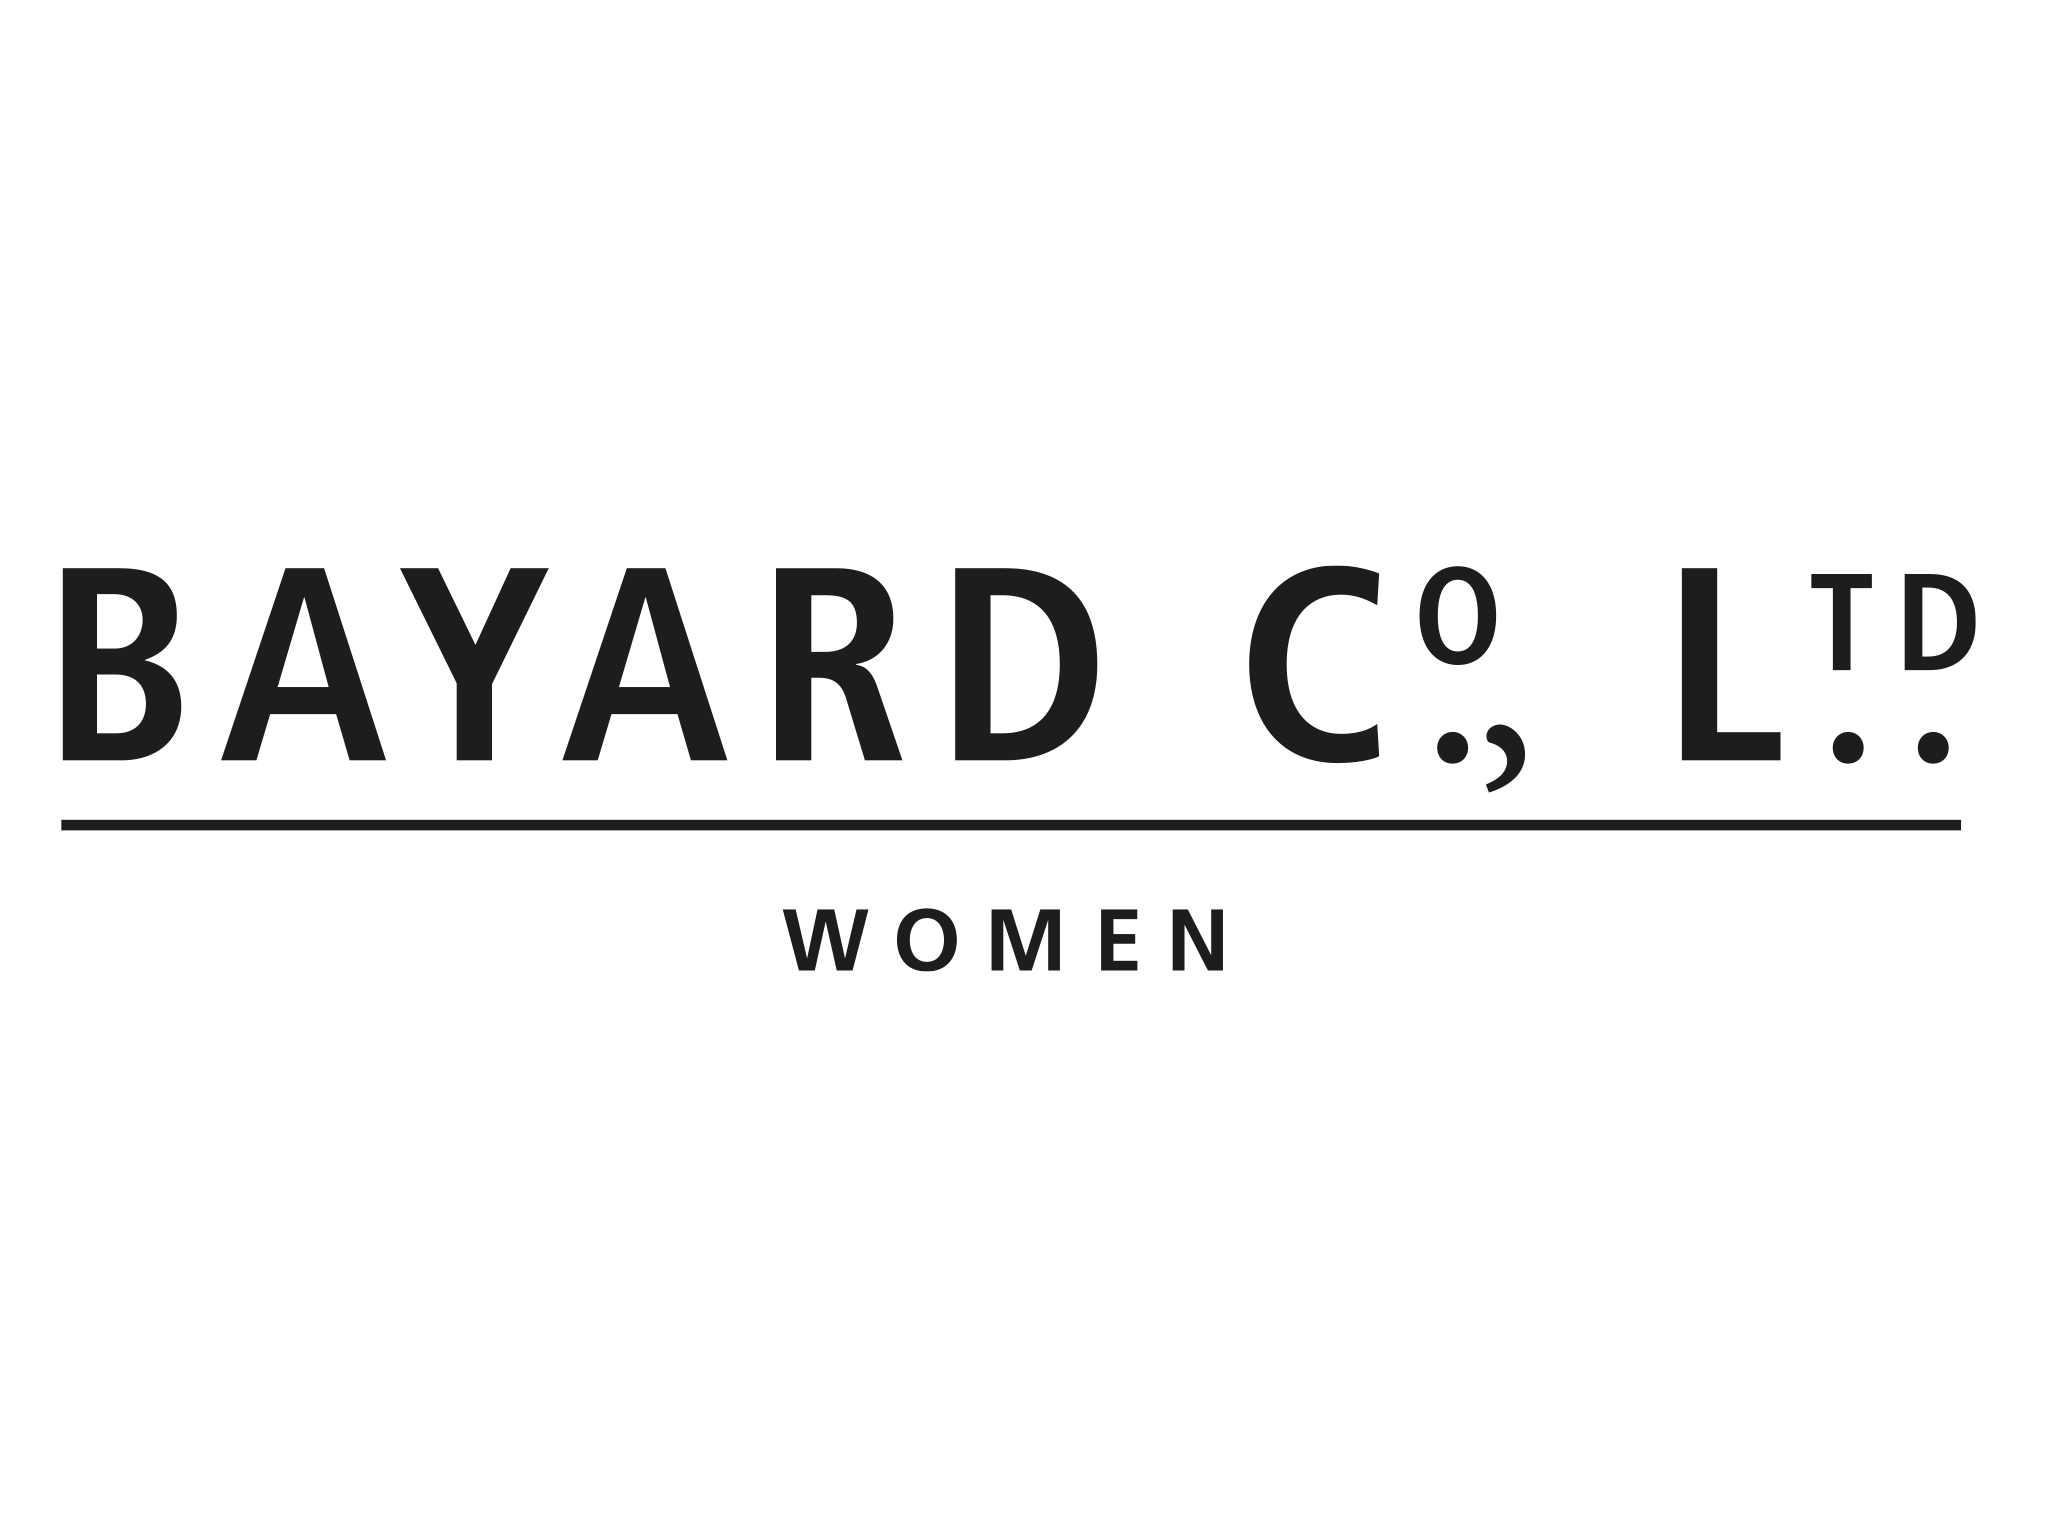 Bayard Co Ltd Flughafen Zuerich